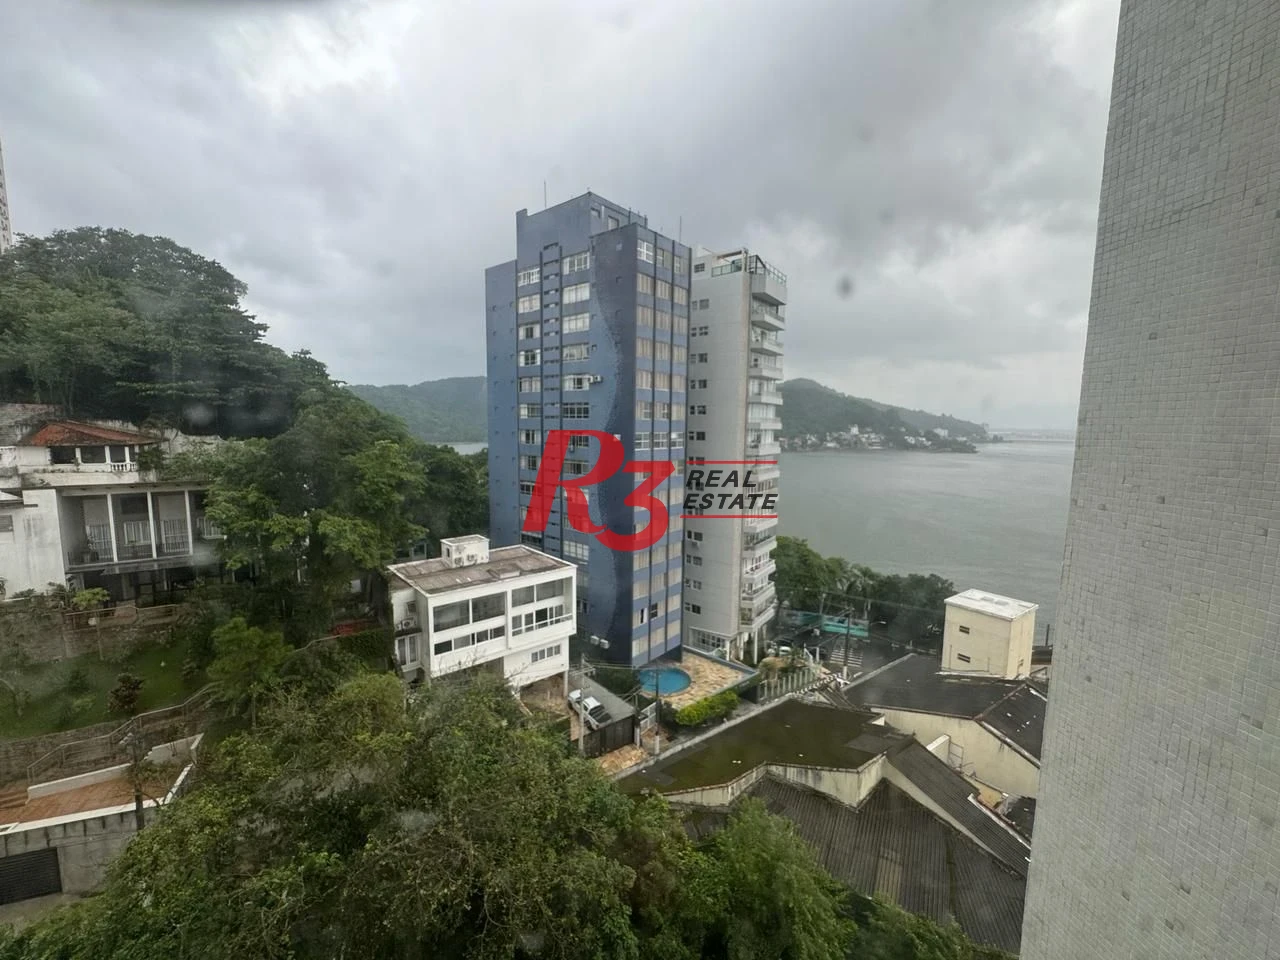 Apartamento com 4 dormitórios à venda, 235 m² por R$ 1.200.000,00 - Ilha Porchat - São Vicente/SP